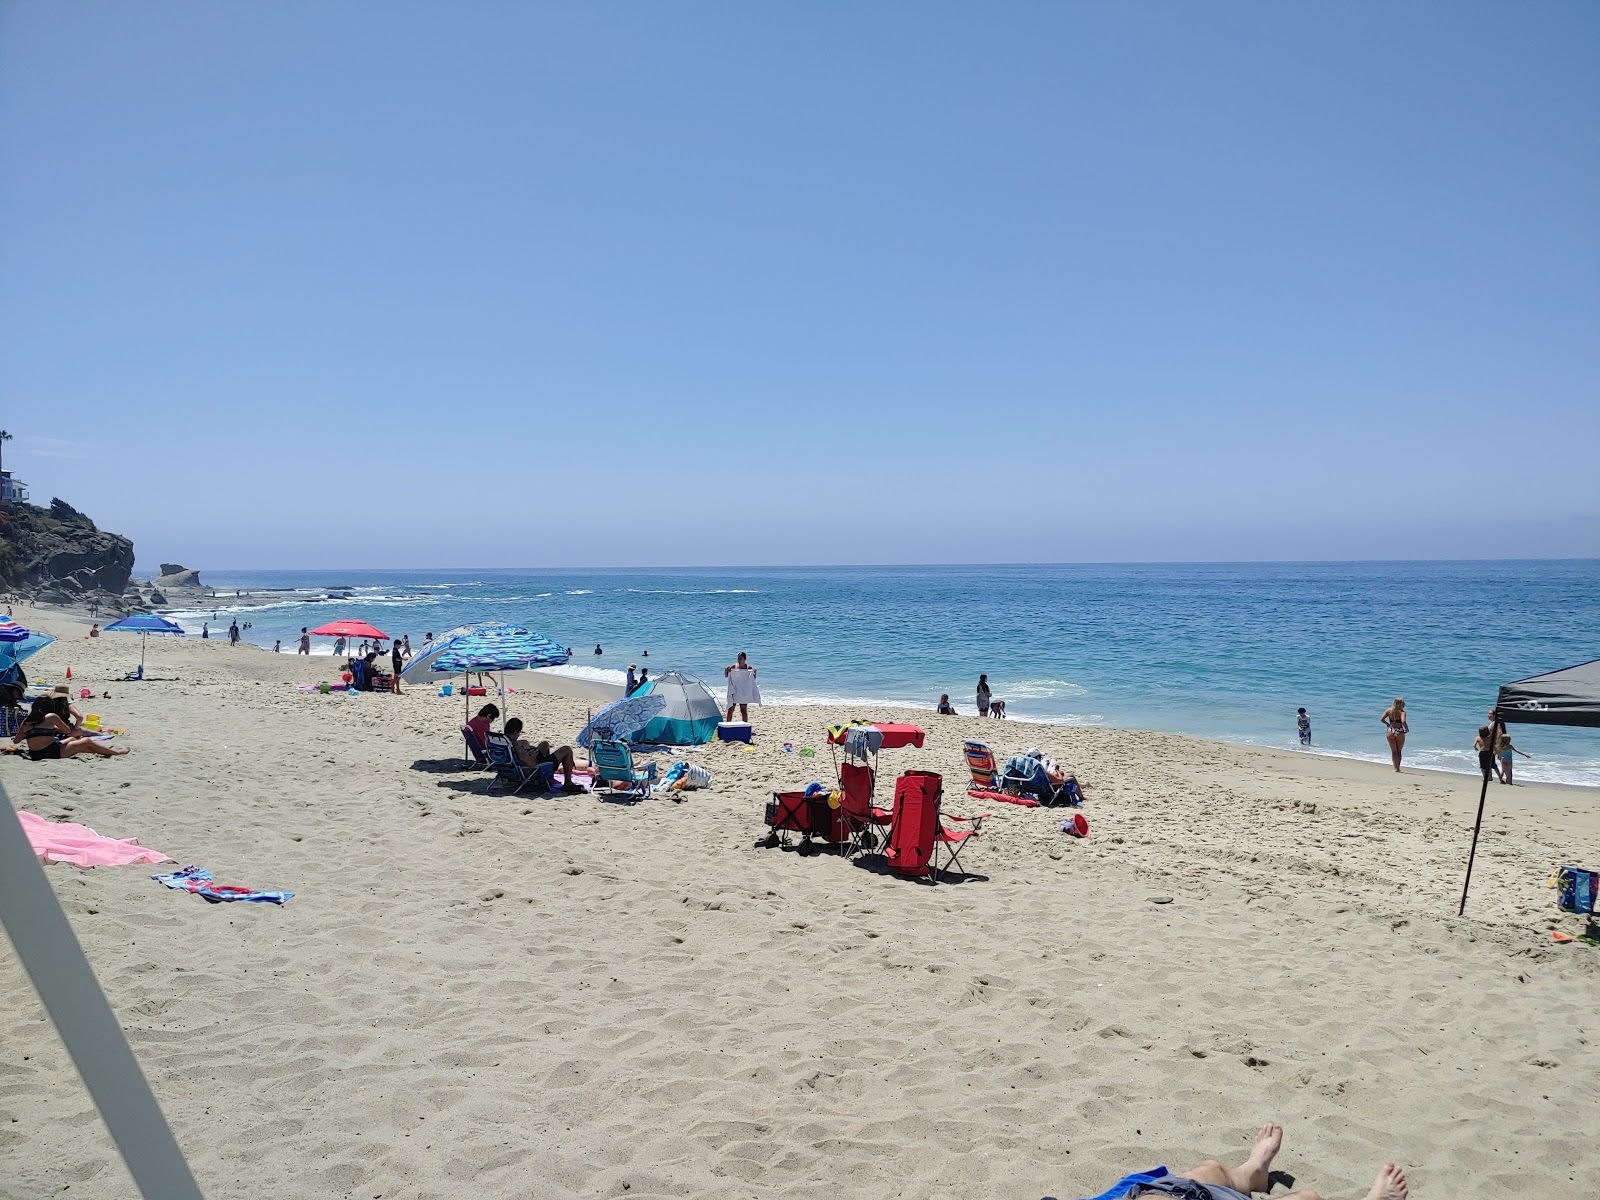 Aliso beach'in fotoğrafı geniş plaj ile birlikte